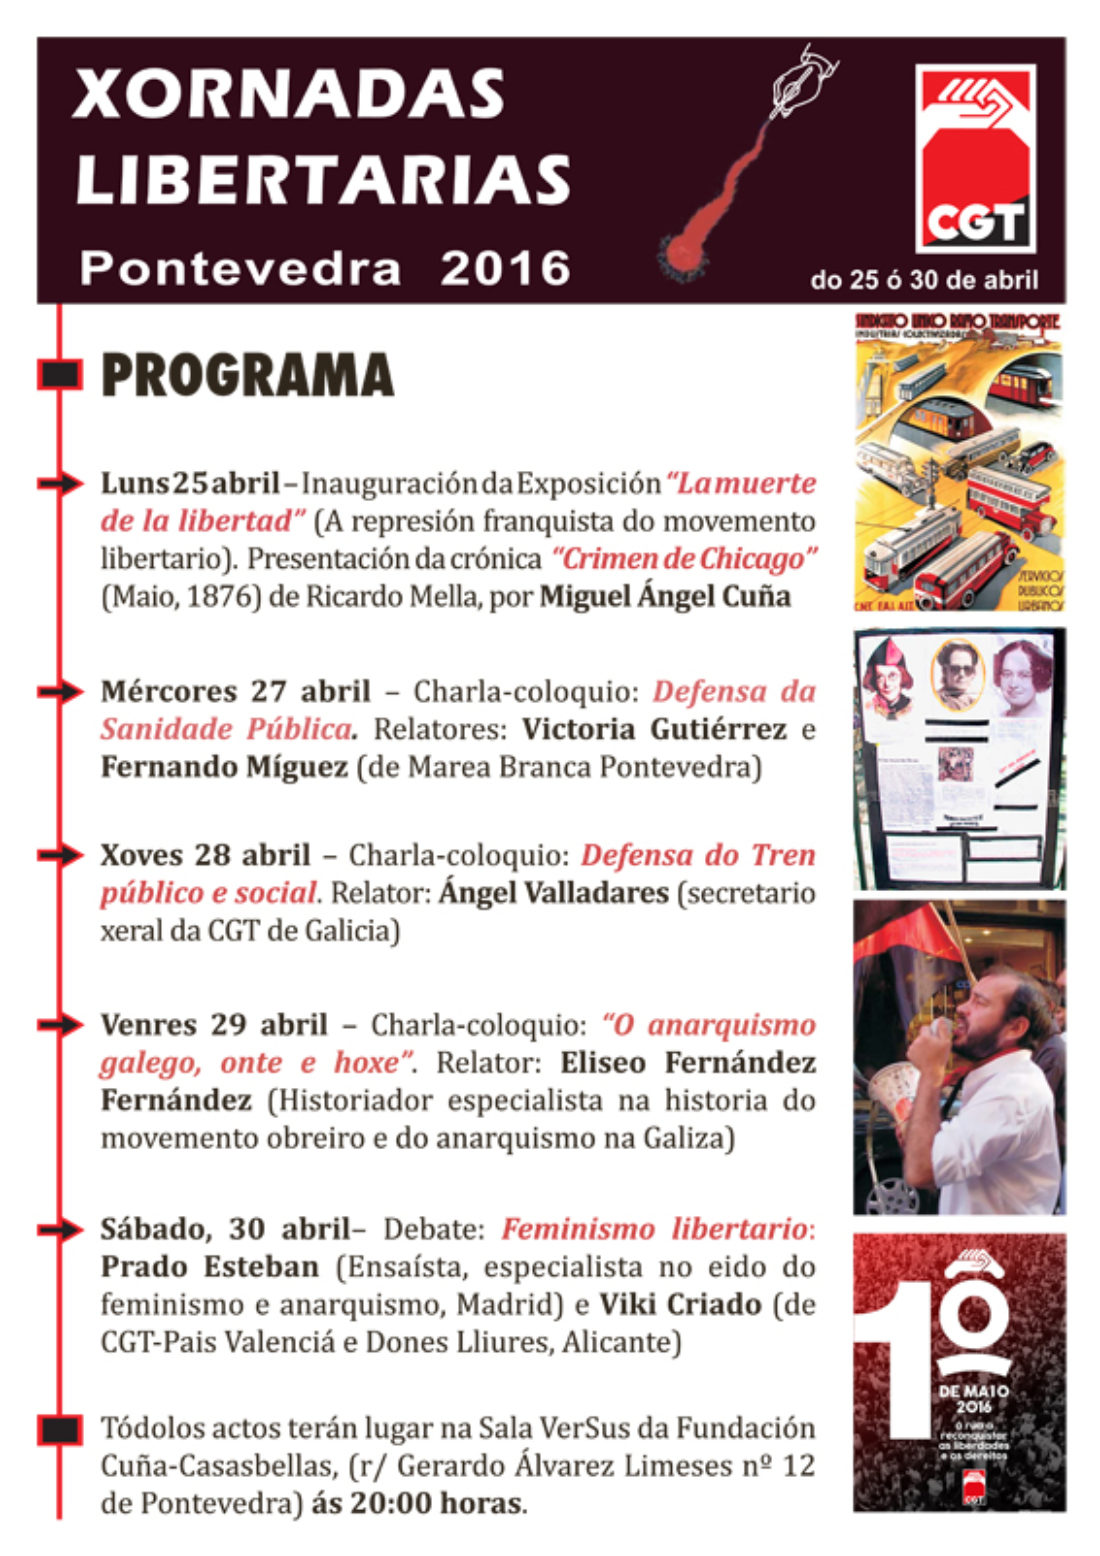 Xornadas Libertarias Pontevedra 2016